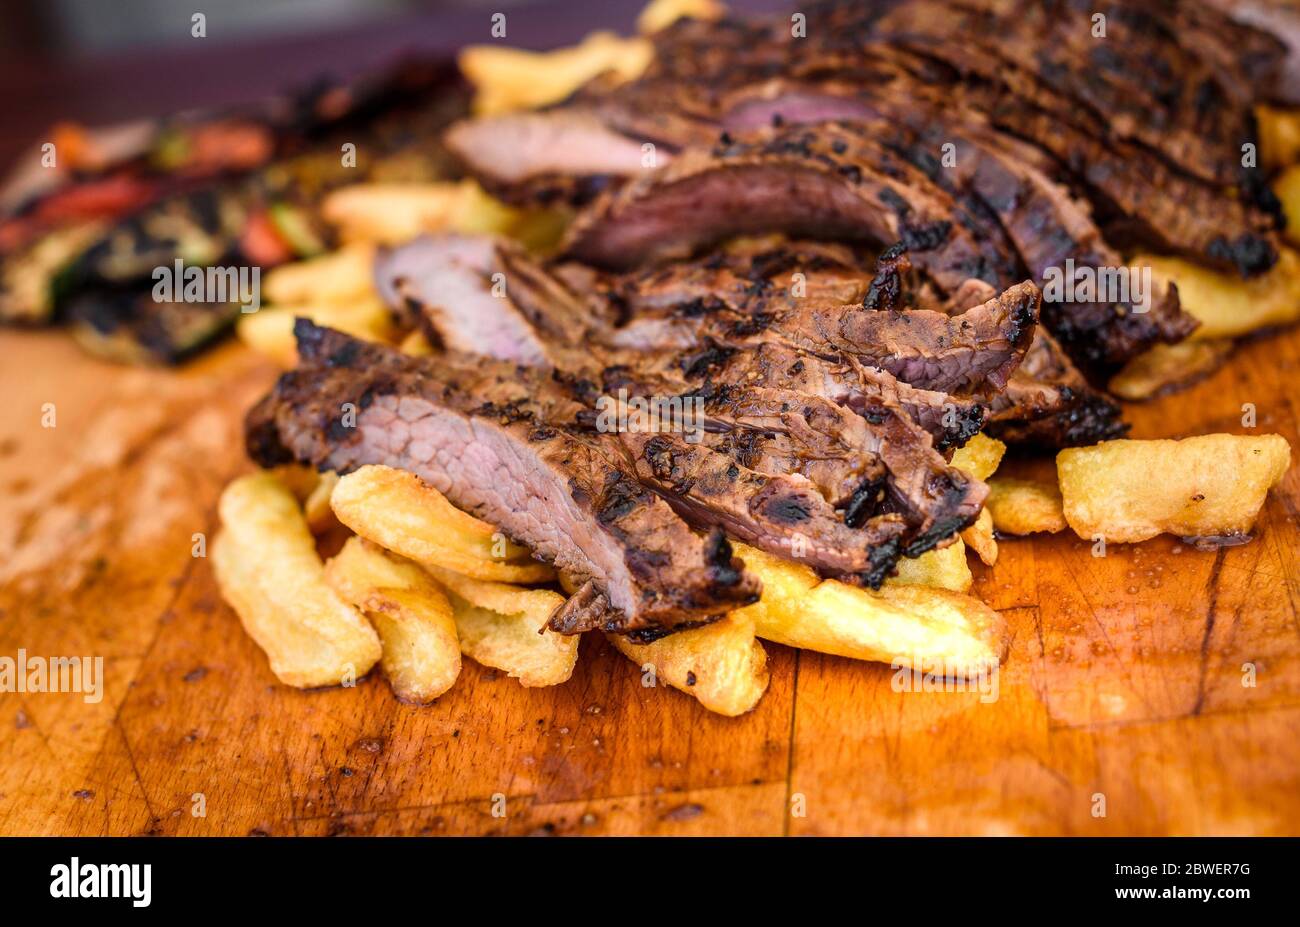 Tranches de boeuf mariné grillé juteux steak de flanc sur planche de bois. La viande saignante juteuse est découpé et prêt à servir avec des légumes cuits et pota Banque D'Images